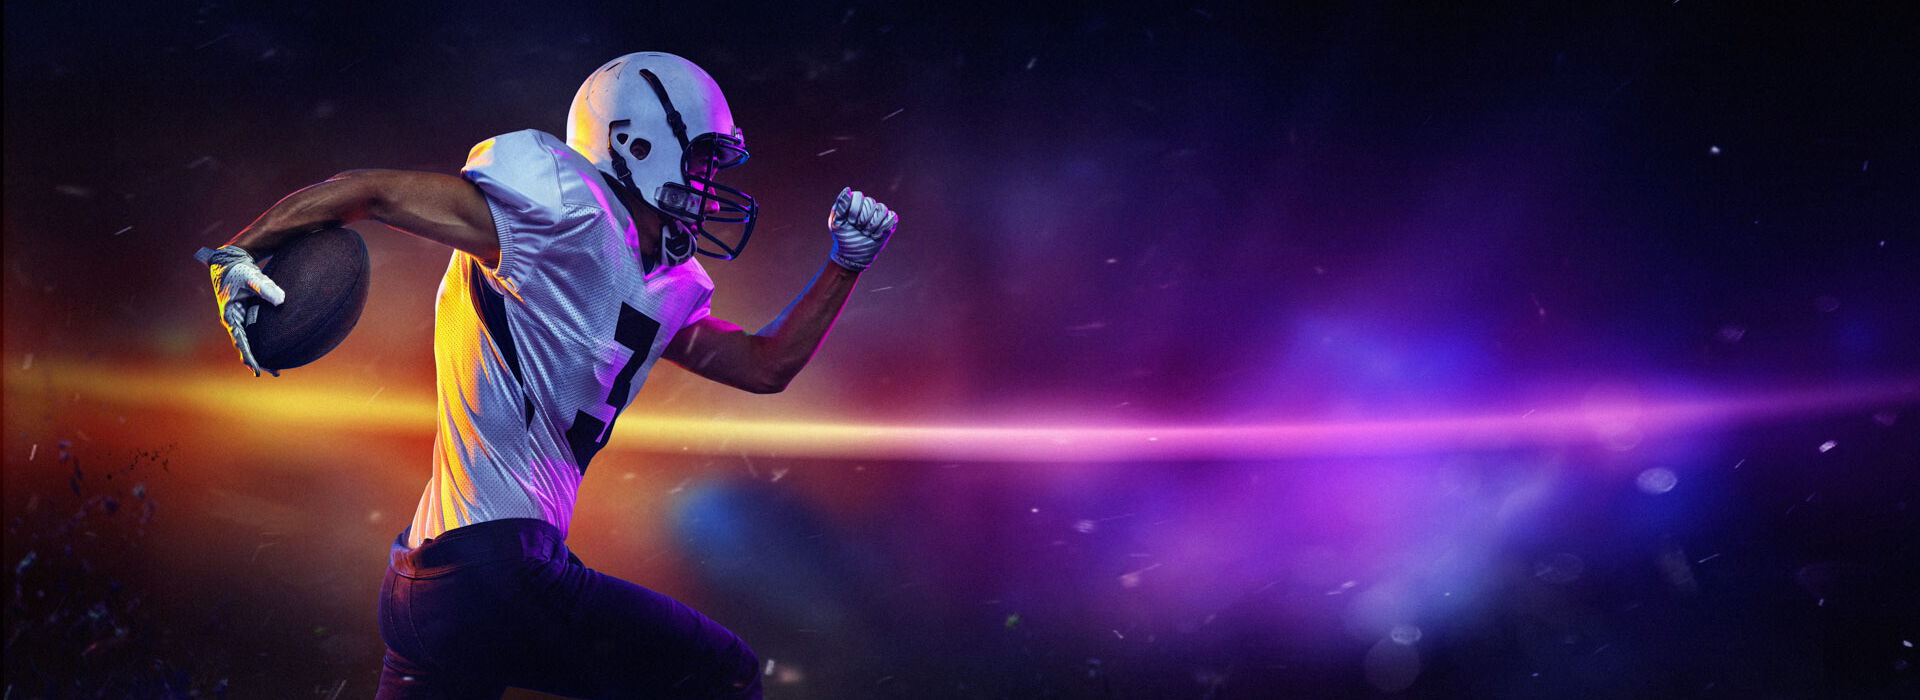 Football-Spieler - läuft vor Bild mit starken Farben und Licht-Effekt